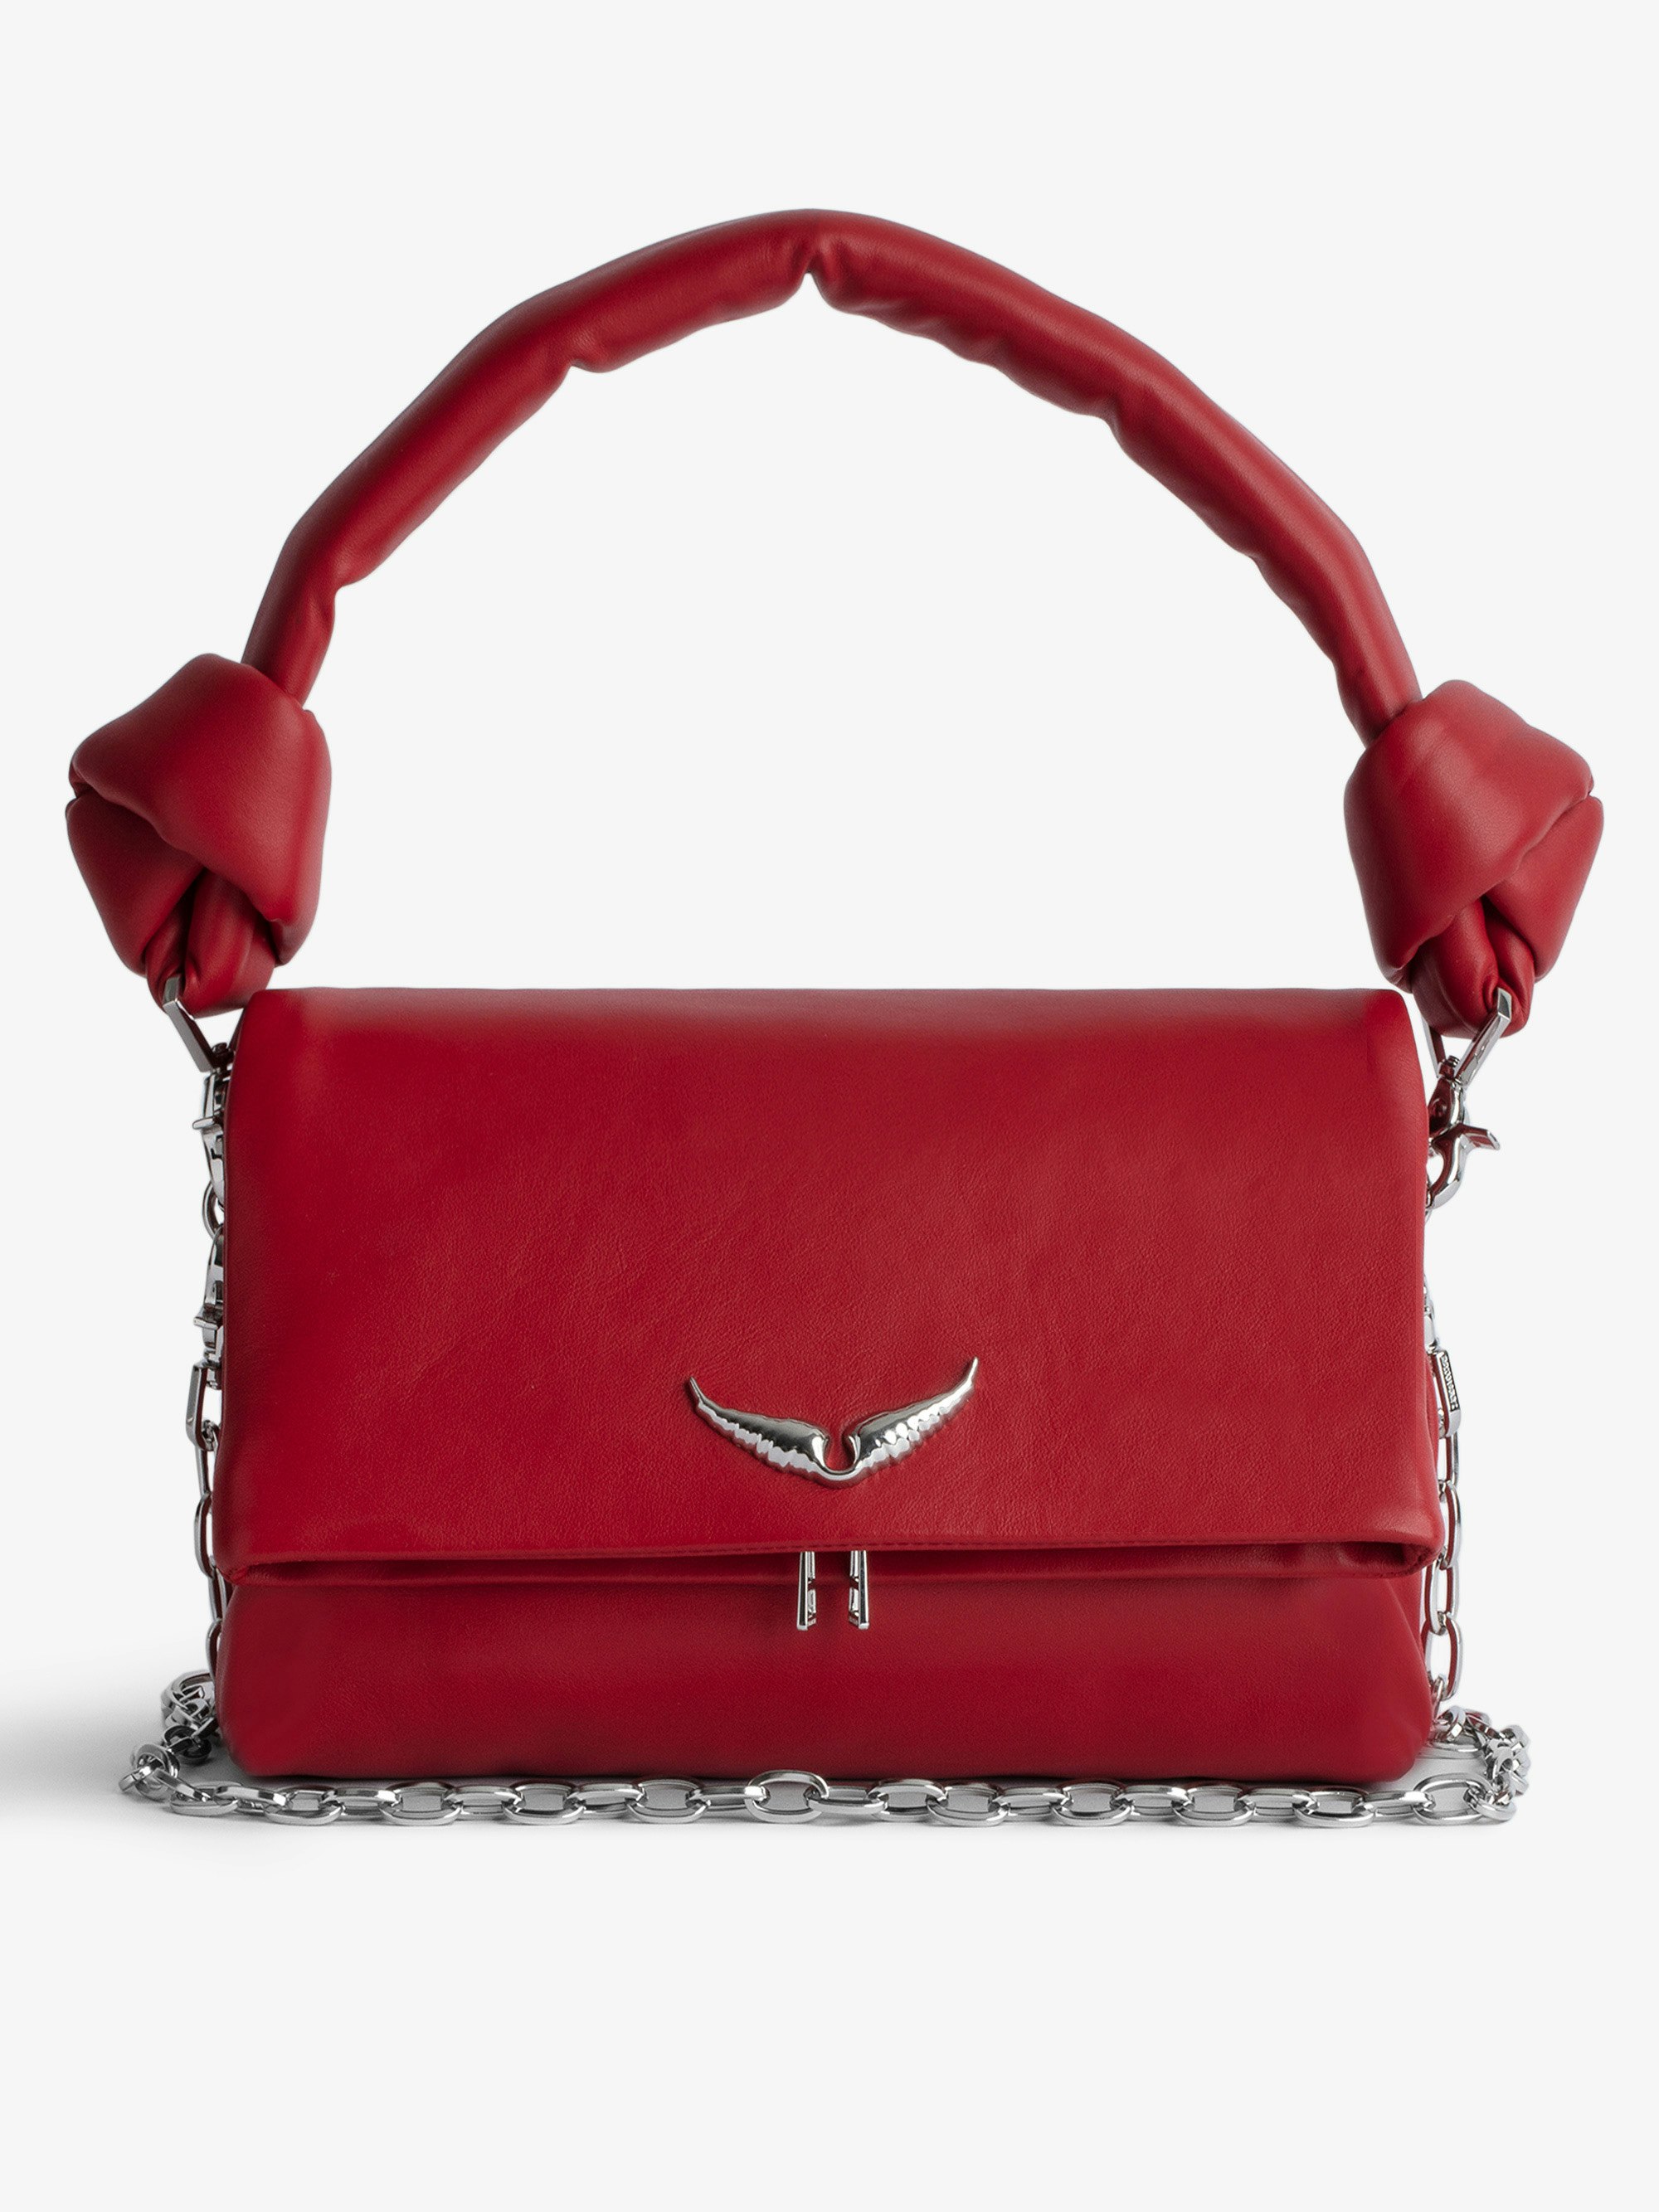 Tasche Rocky Eternal - Rote Handtasche aus Glattleder mit geknotetem Henkel und Umhängekette.